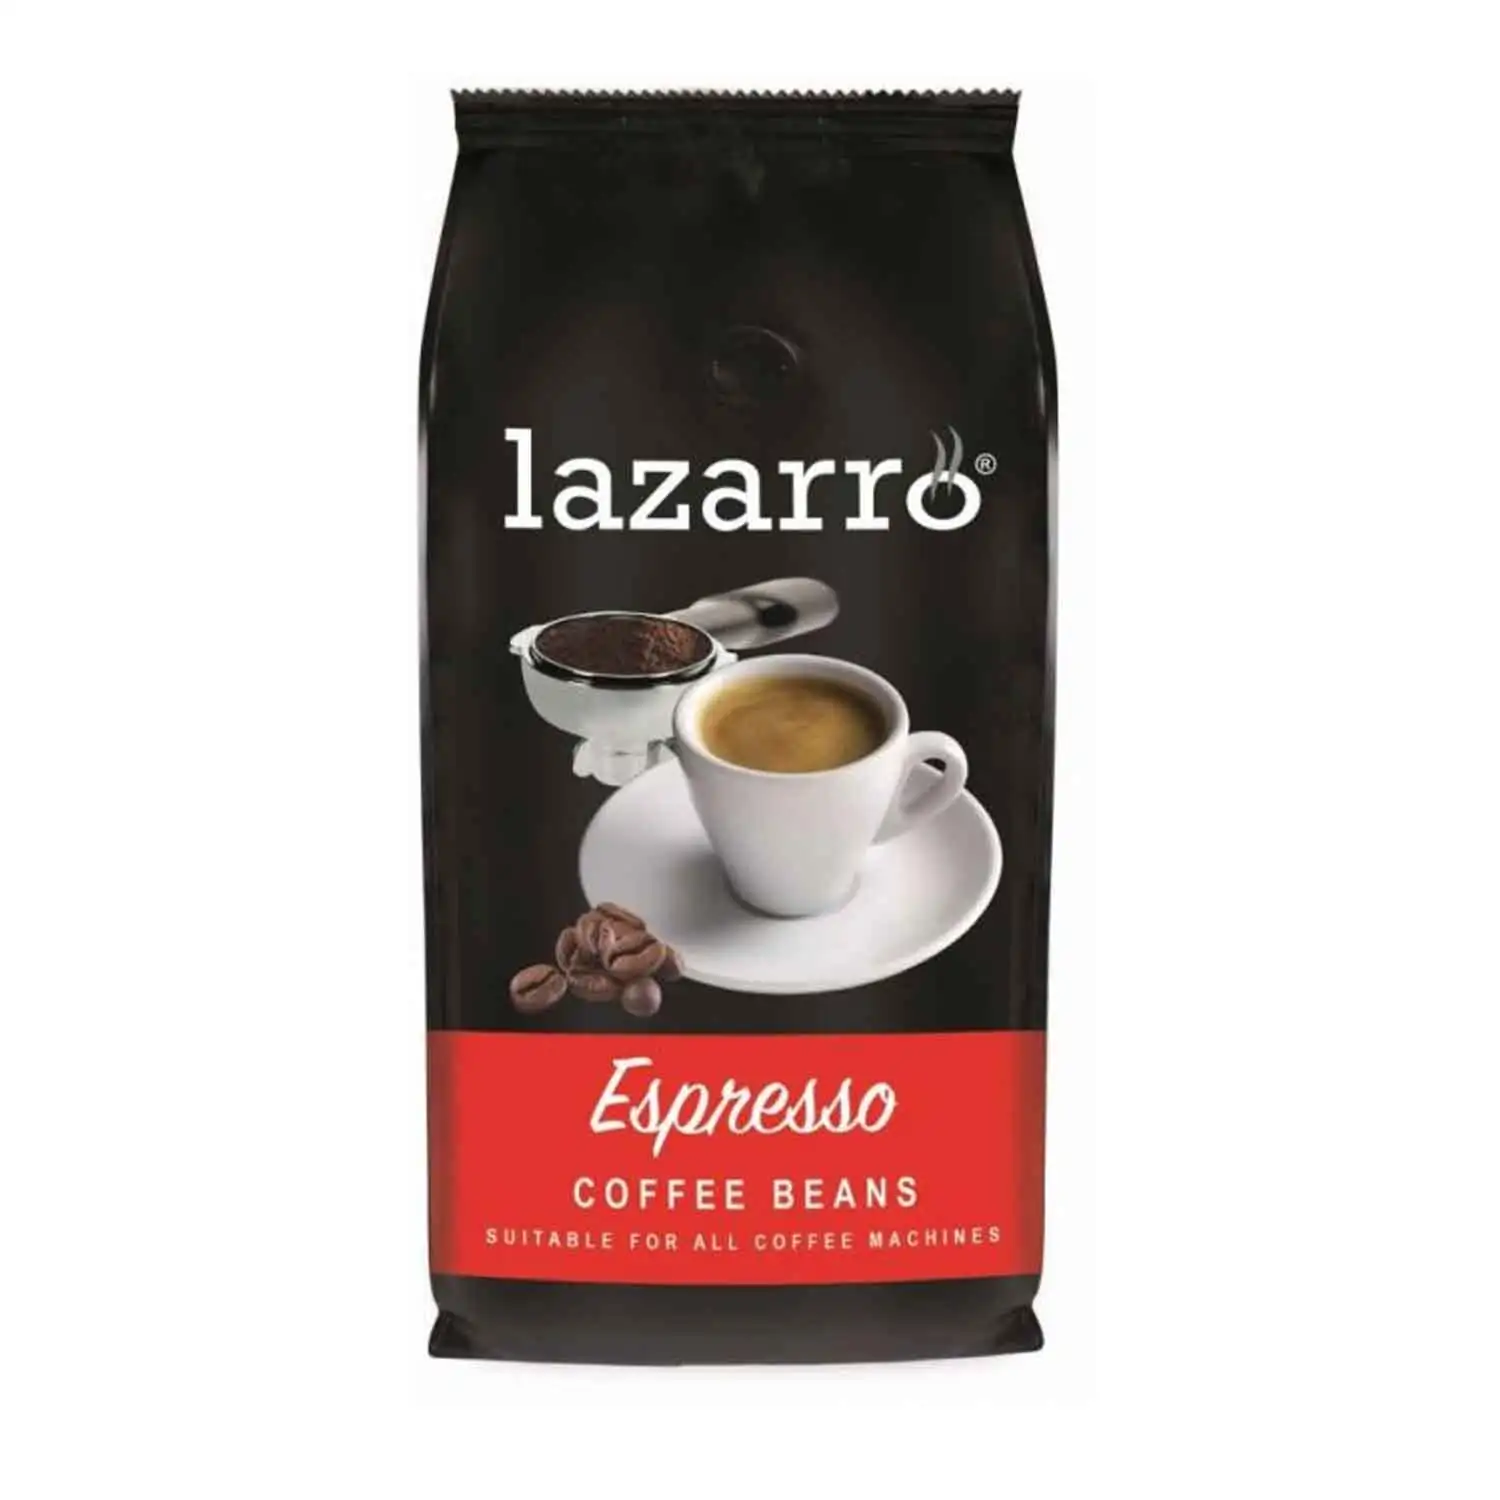 Lazarro café en grains espresso 1kg - Buy at Real Tobacco